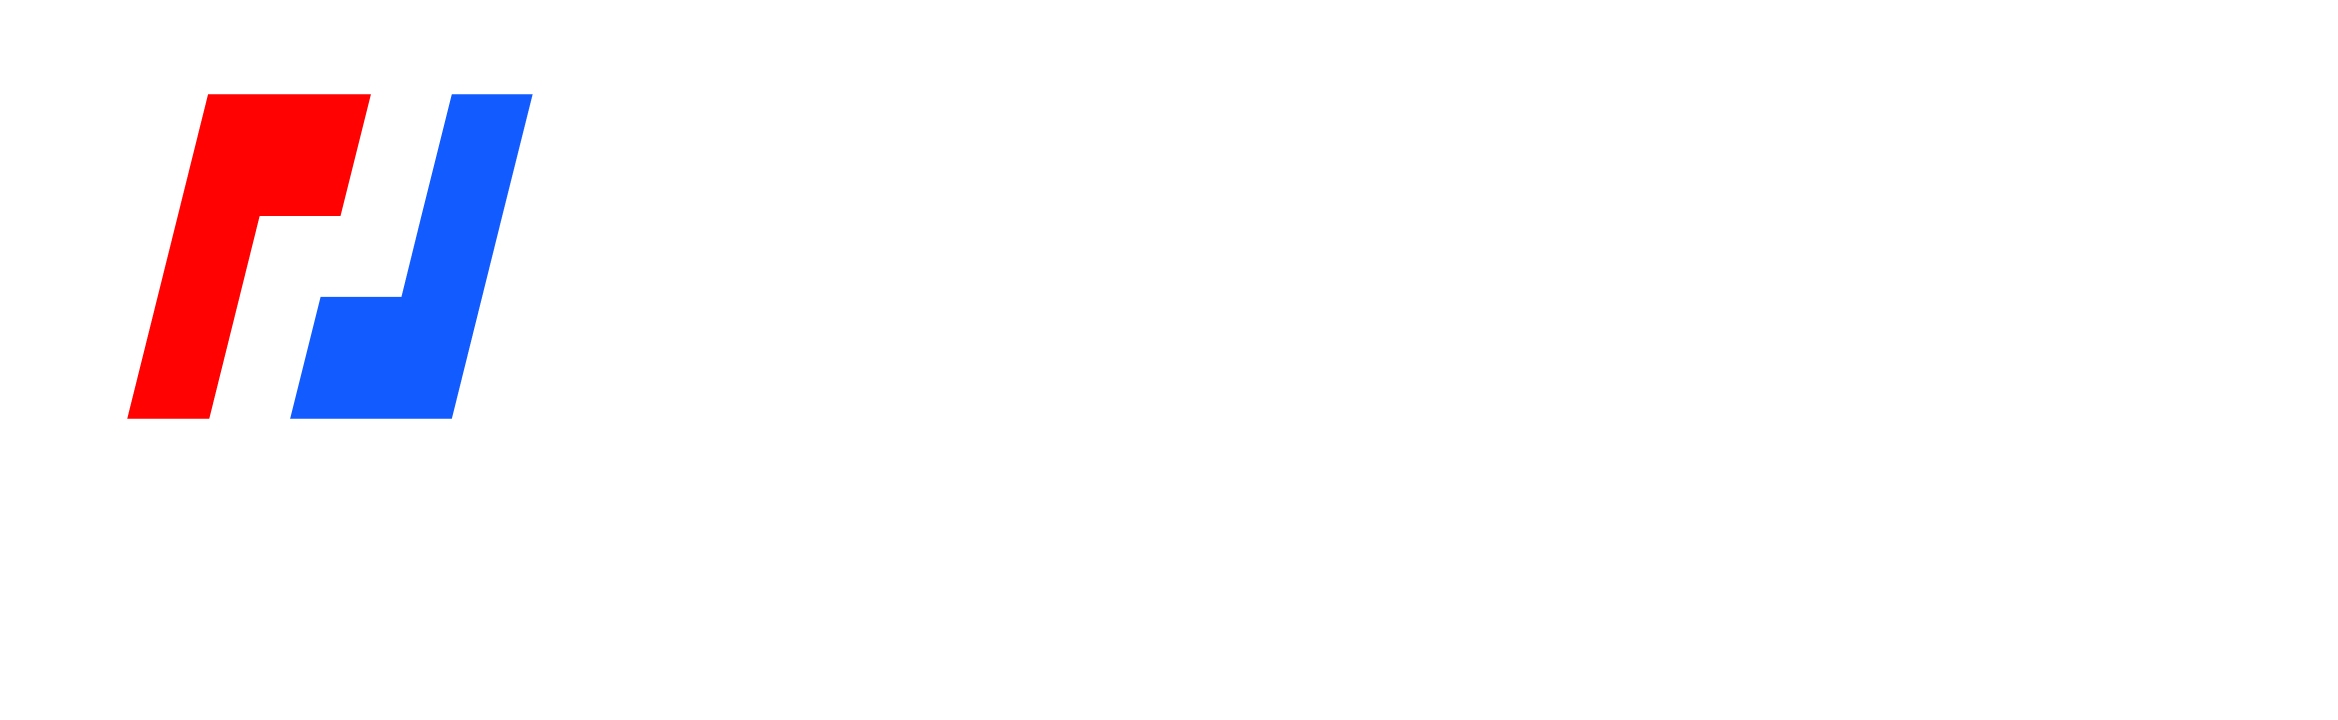 BitMEX-HK-logo